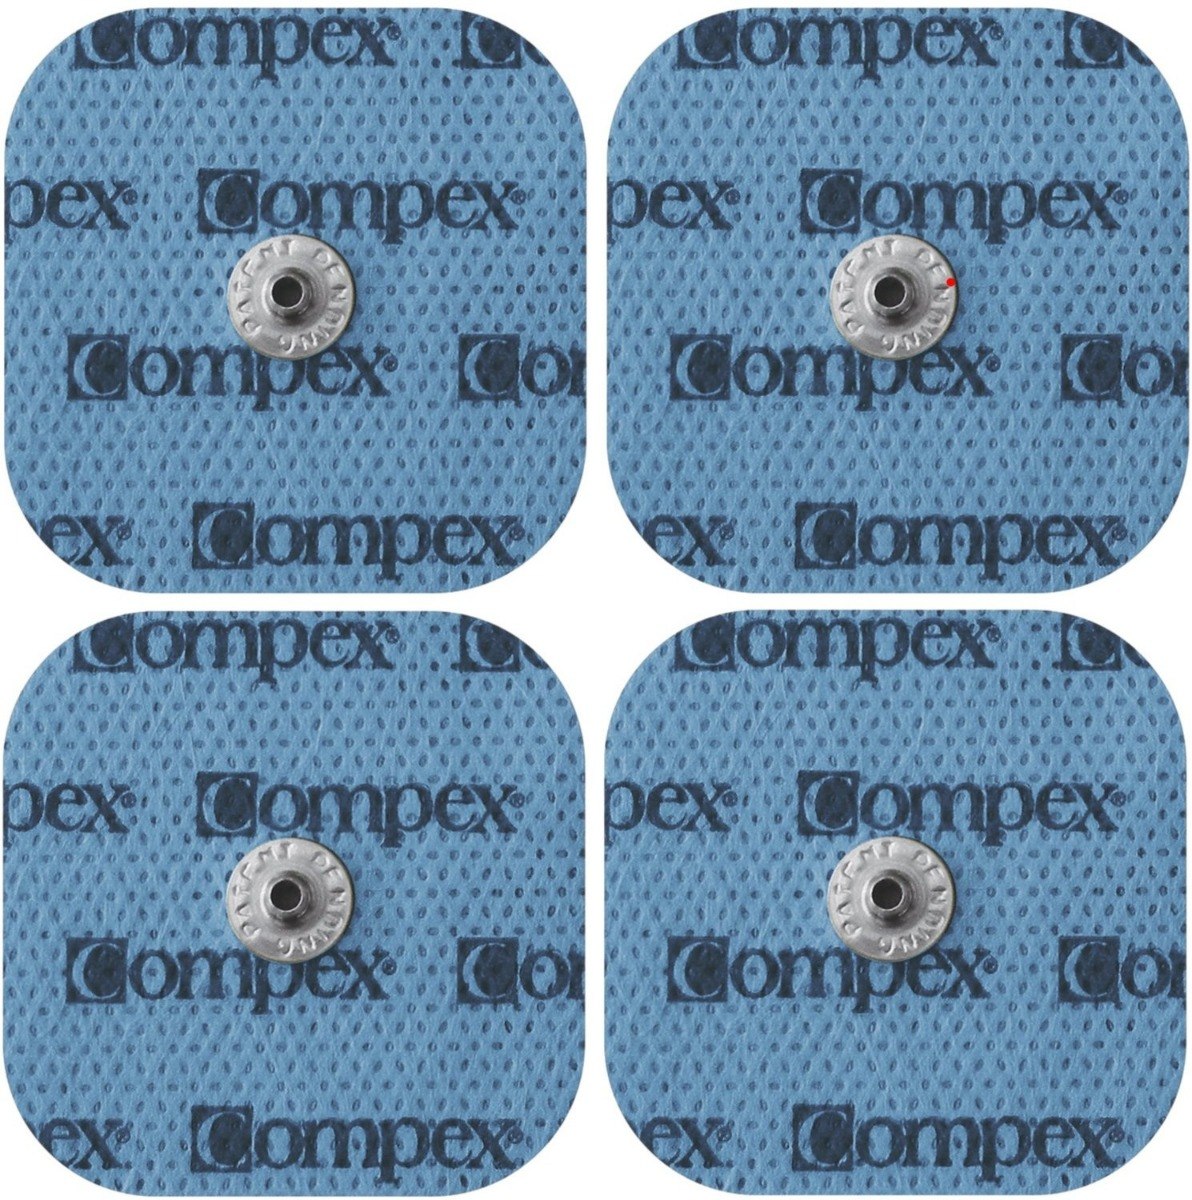 Electrodos Compex EasySnap rectangulares